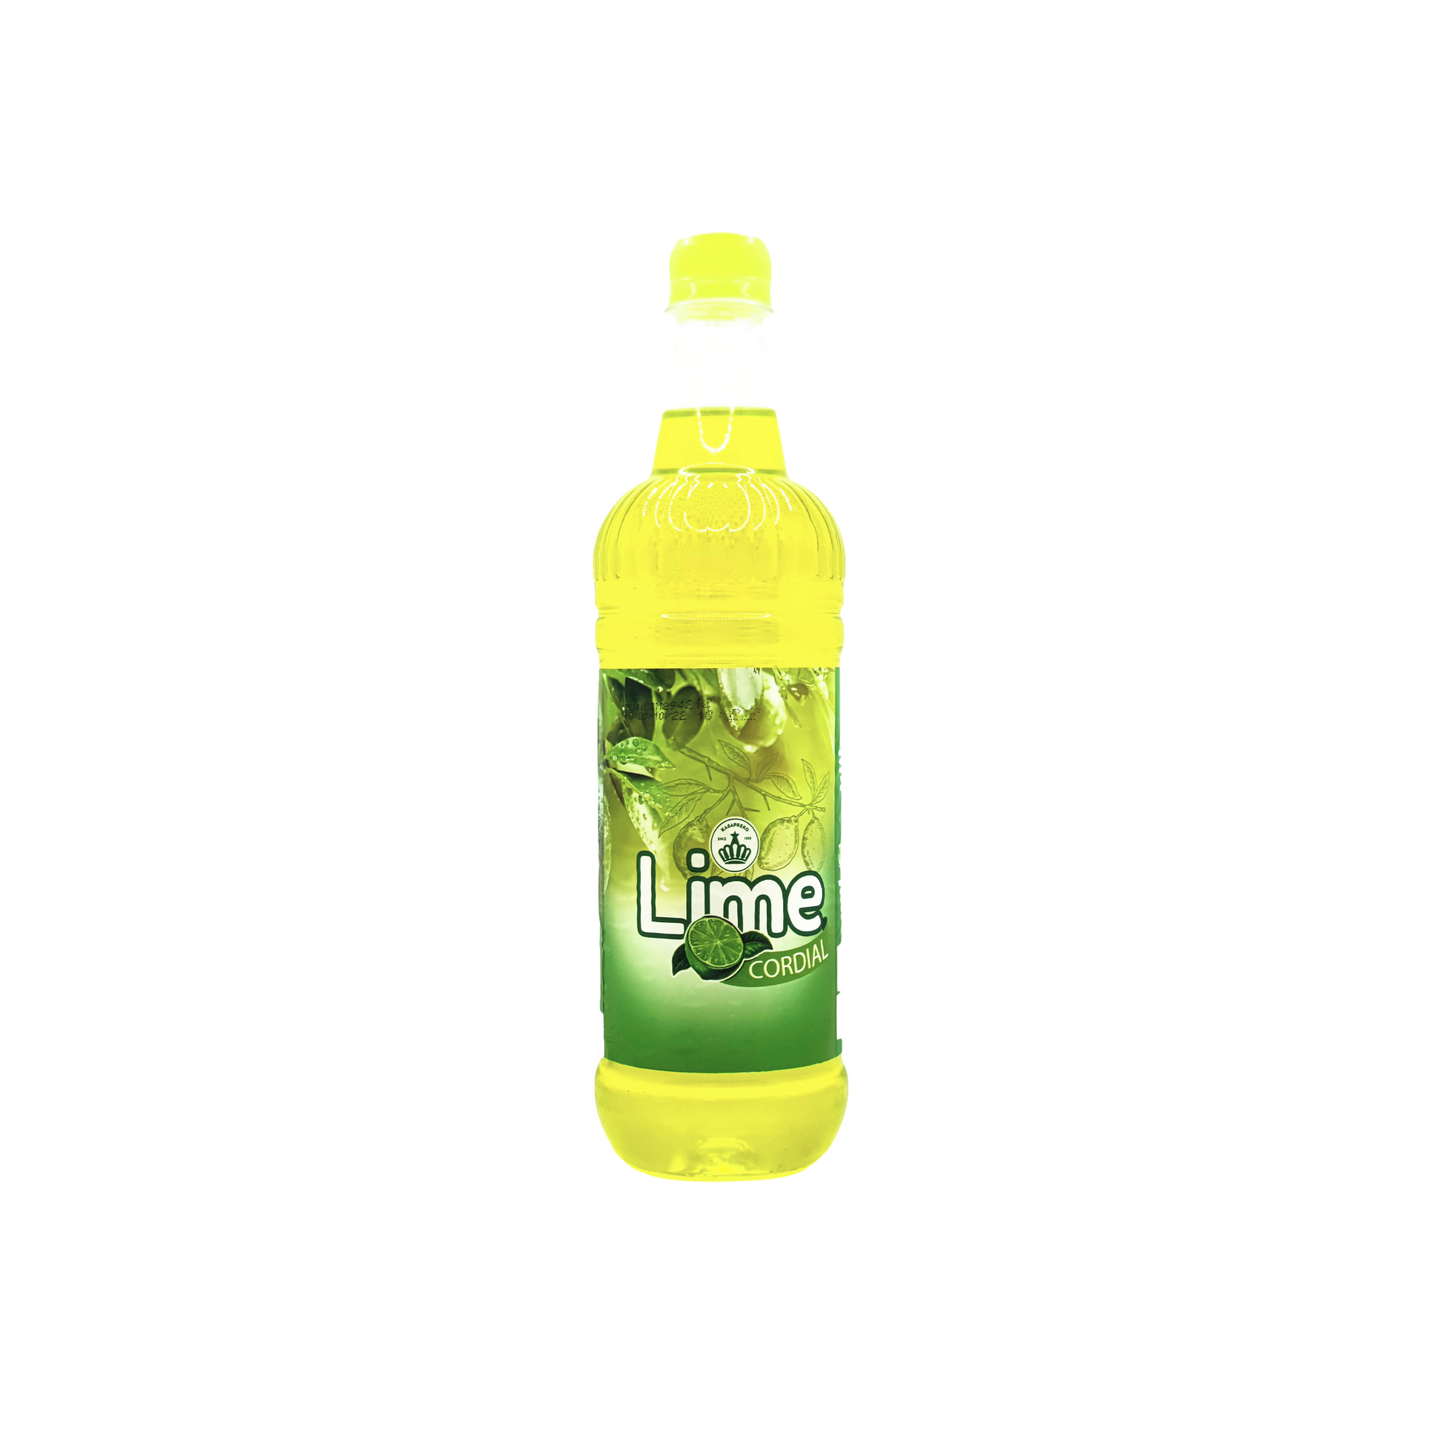 750 millilitre bottle of kasapreko lime cordial